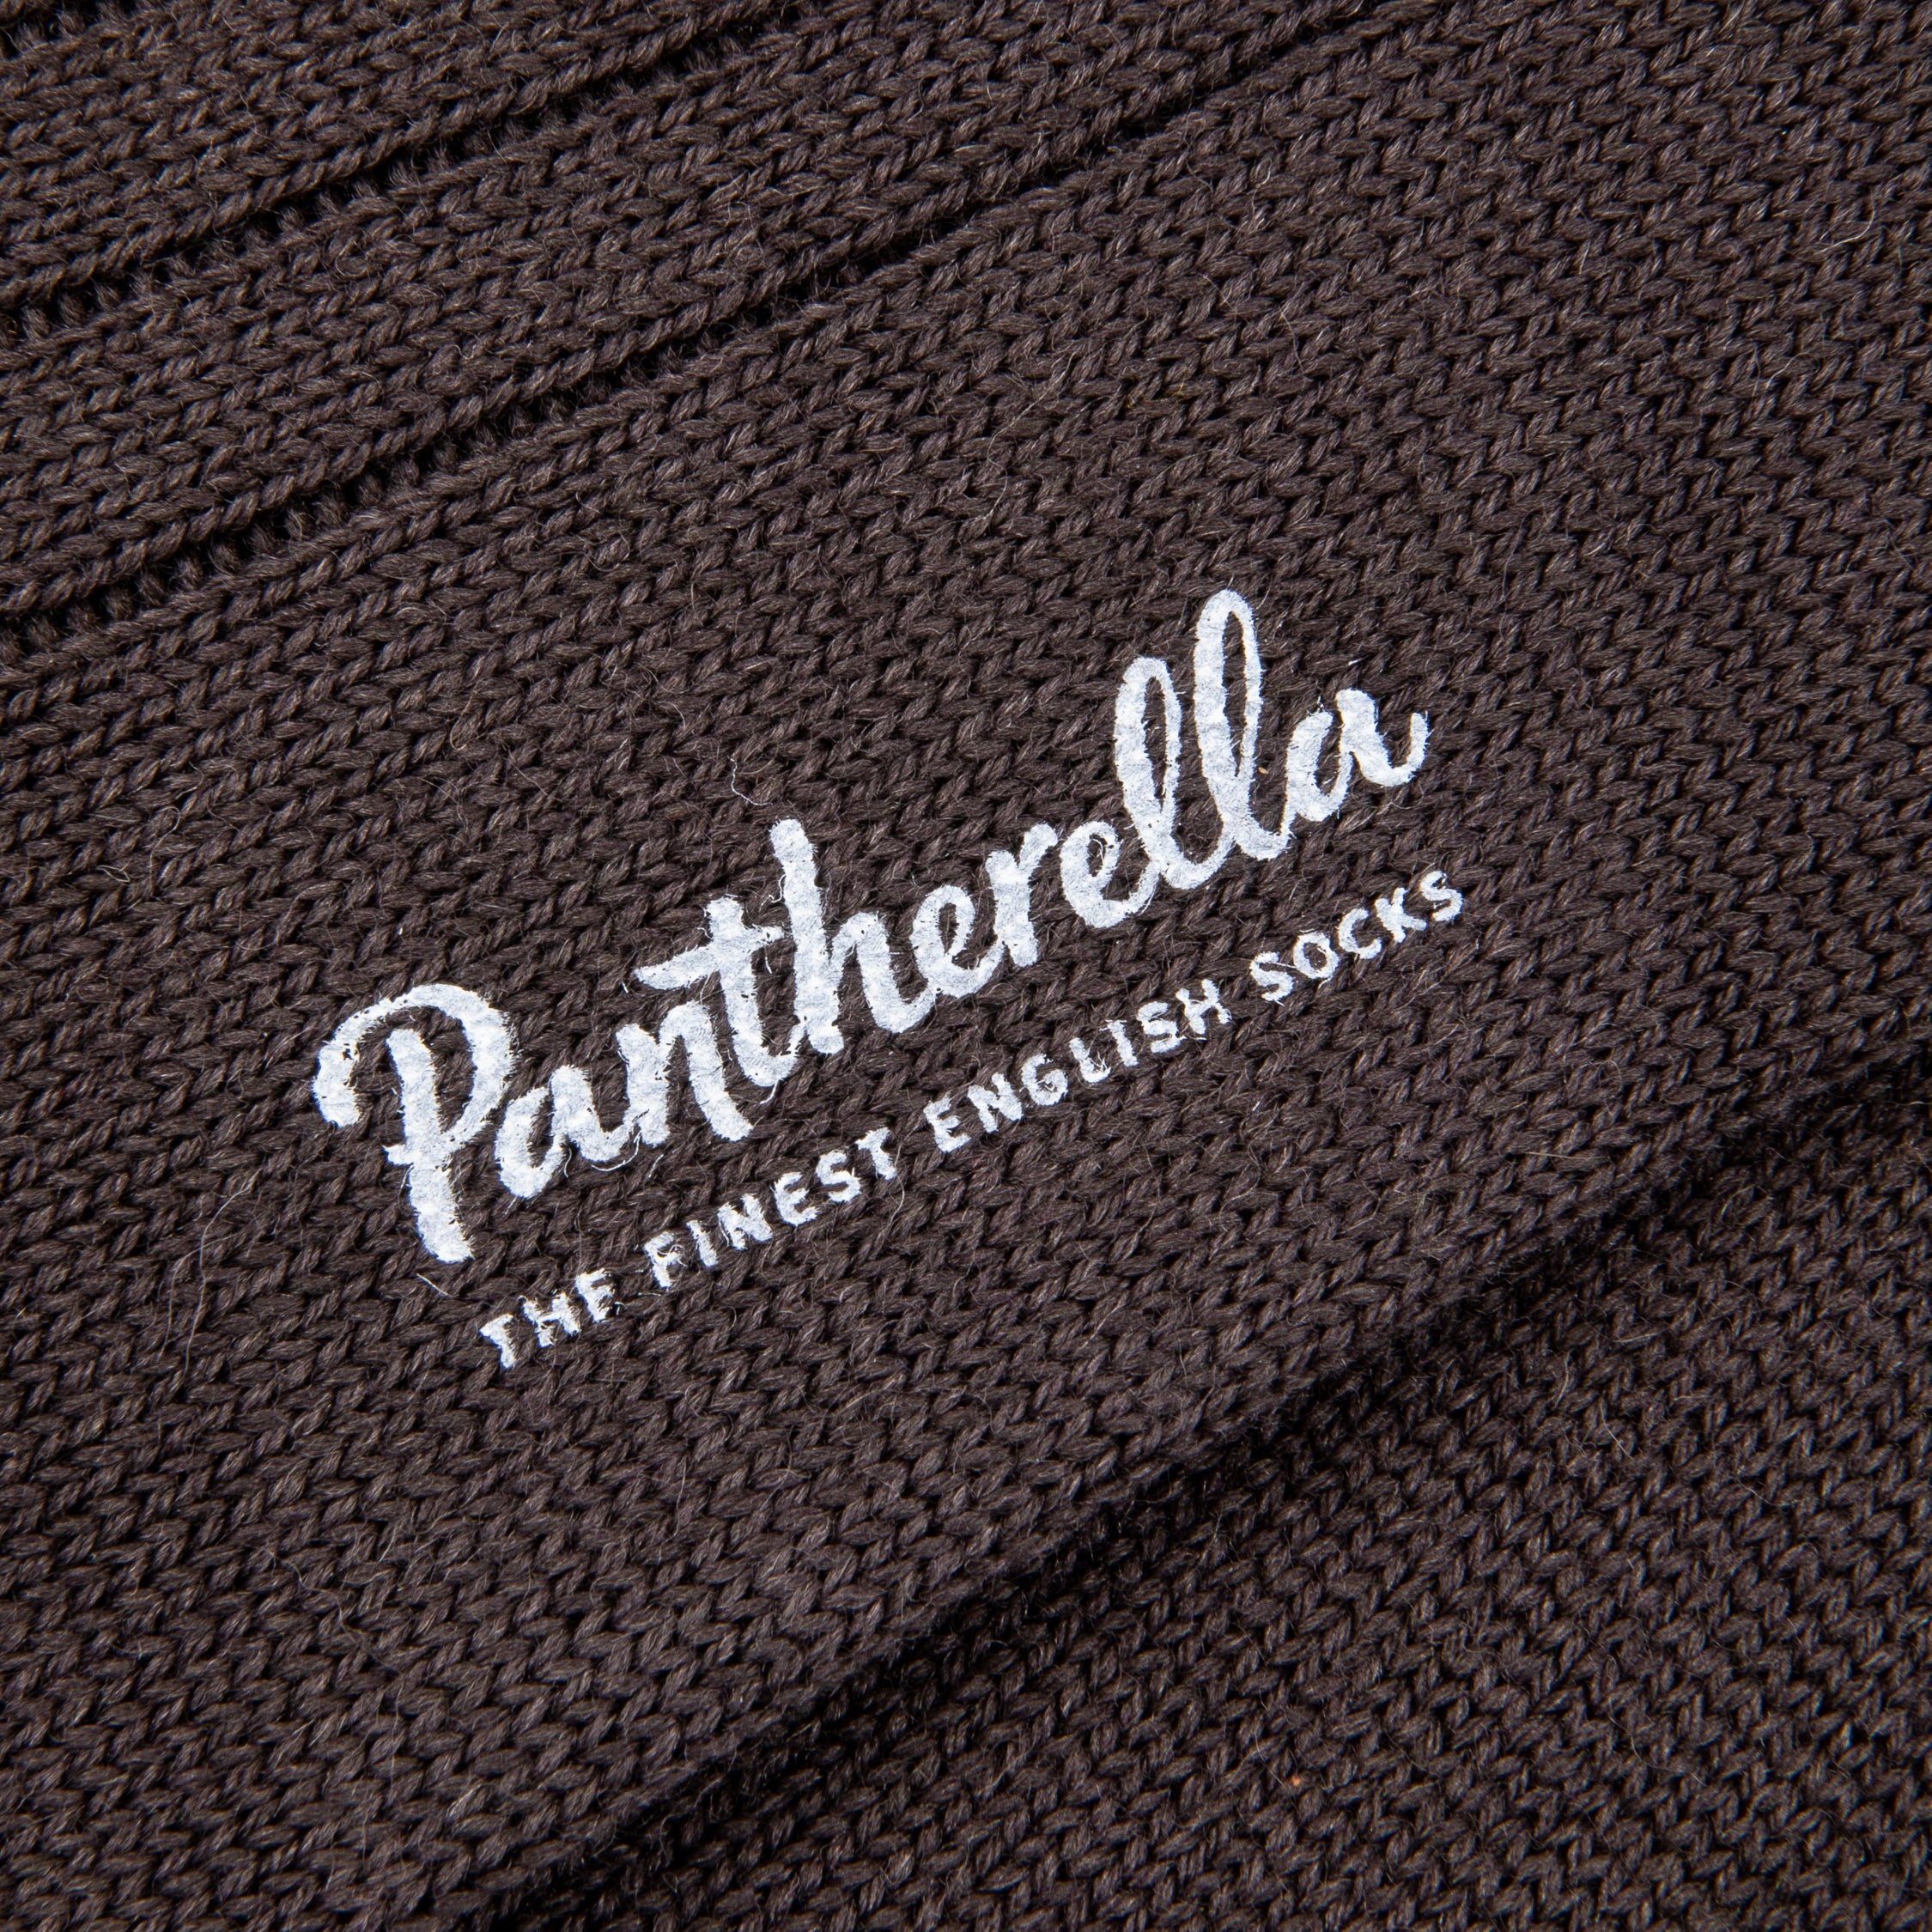 Pantherella Packington Merino wool socks Dark Brown